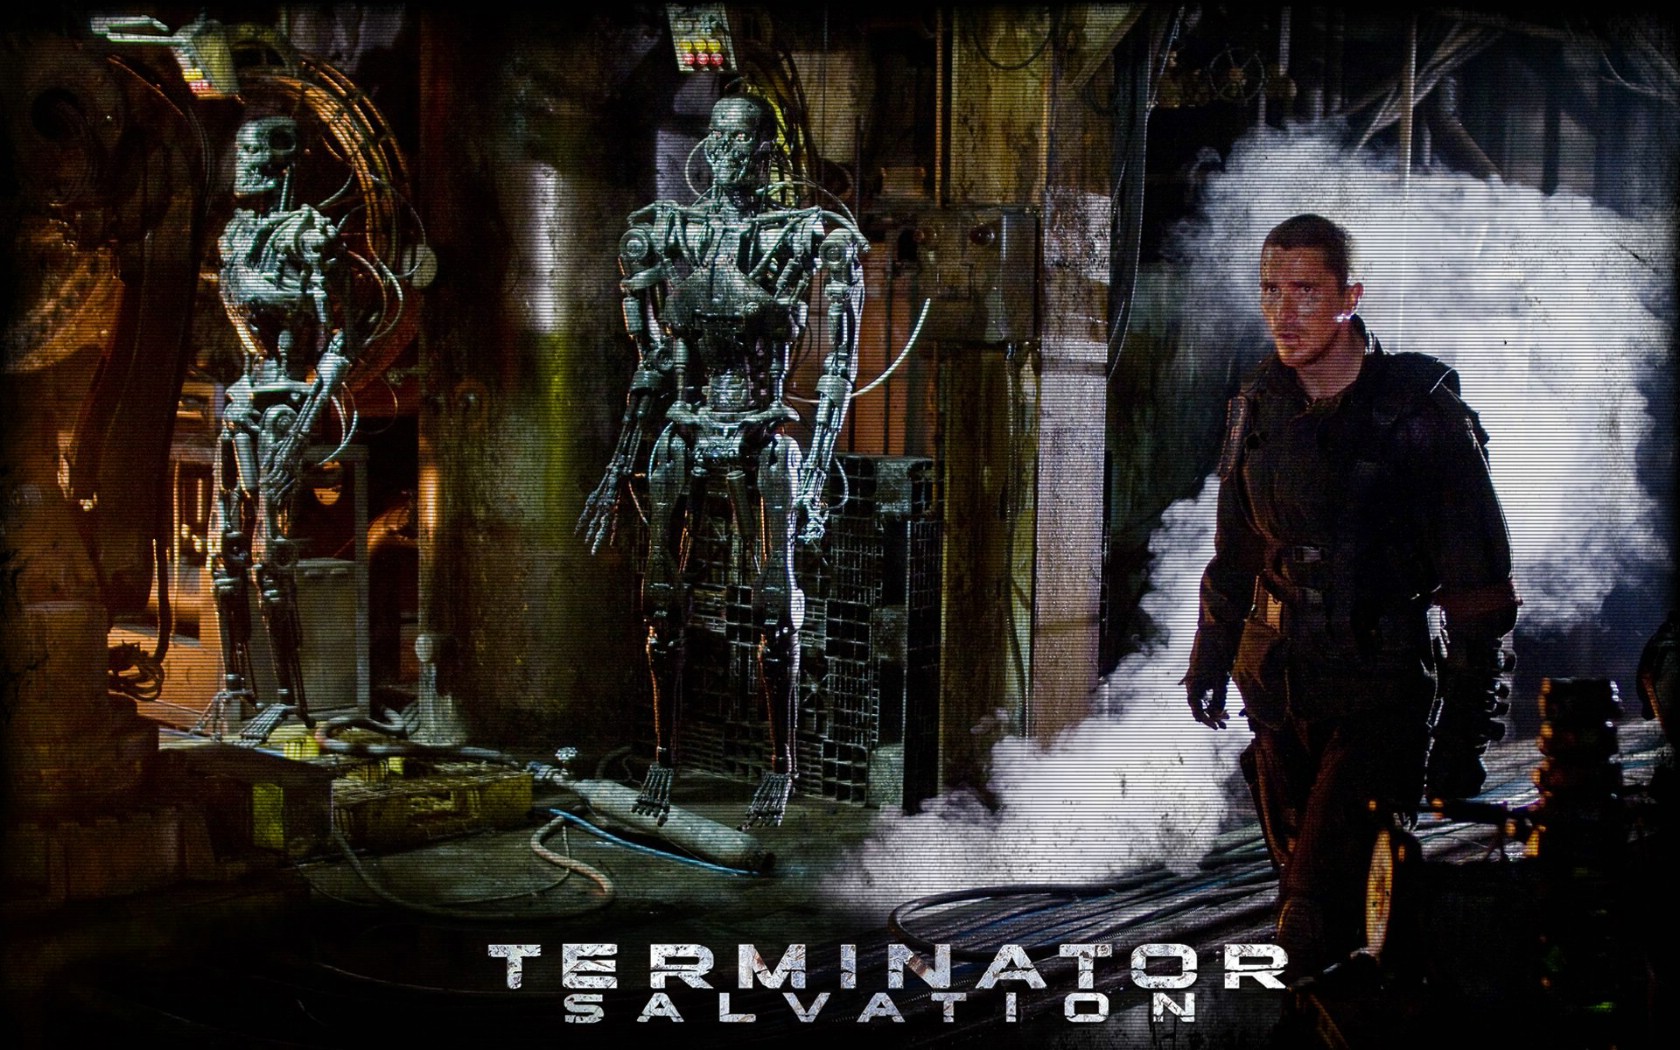 壁纸1680x1050终结者 救世主 Terminator Salvation 电影壁纸 Terminator Salvation 终结者4壁纸 《终结者救世主 Terminator Salvation 》壁纸 《终结者救世主 Terminator Salvation 》图片 《终结者救世主 Terminator Salvation 》素材 影视壁纸 影视图库 影视图片素材桌面壁纸